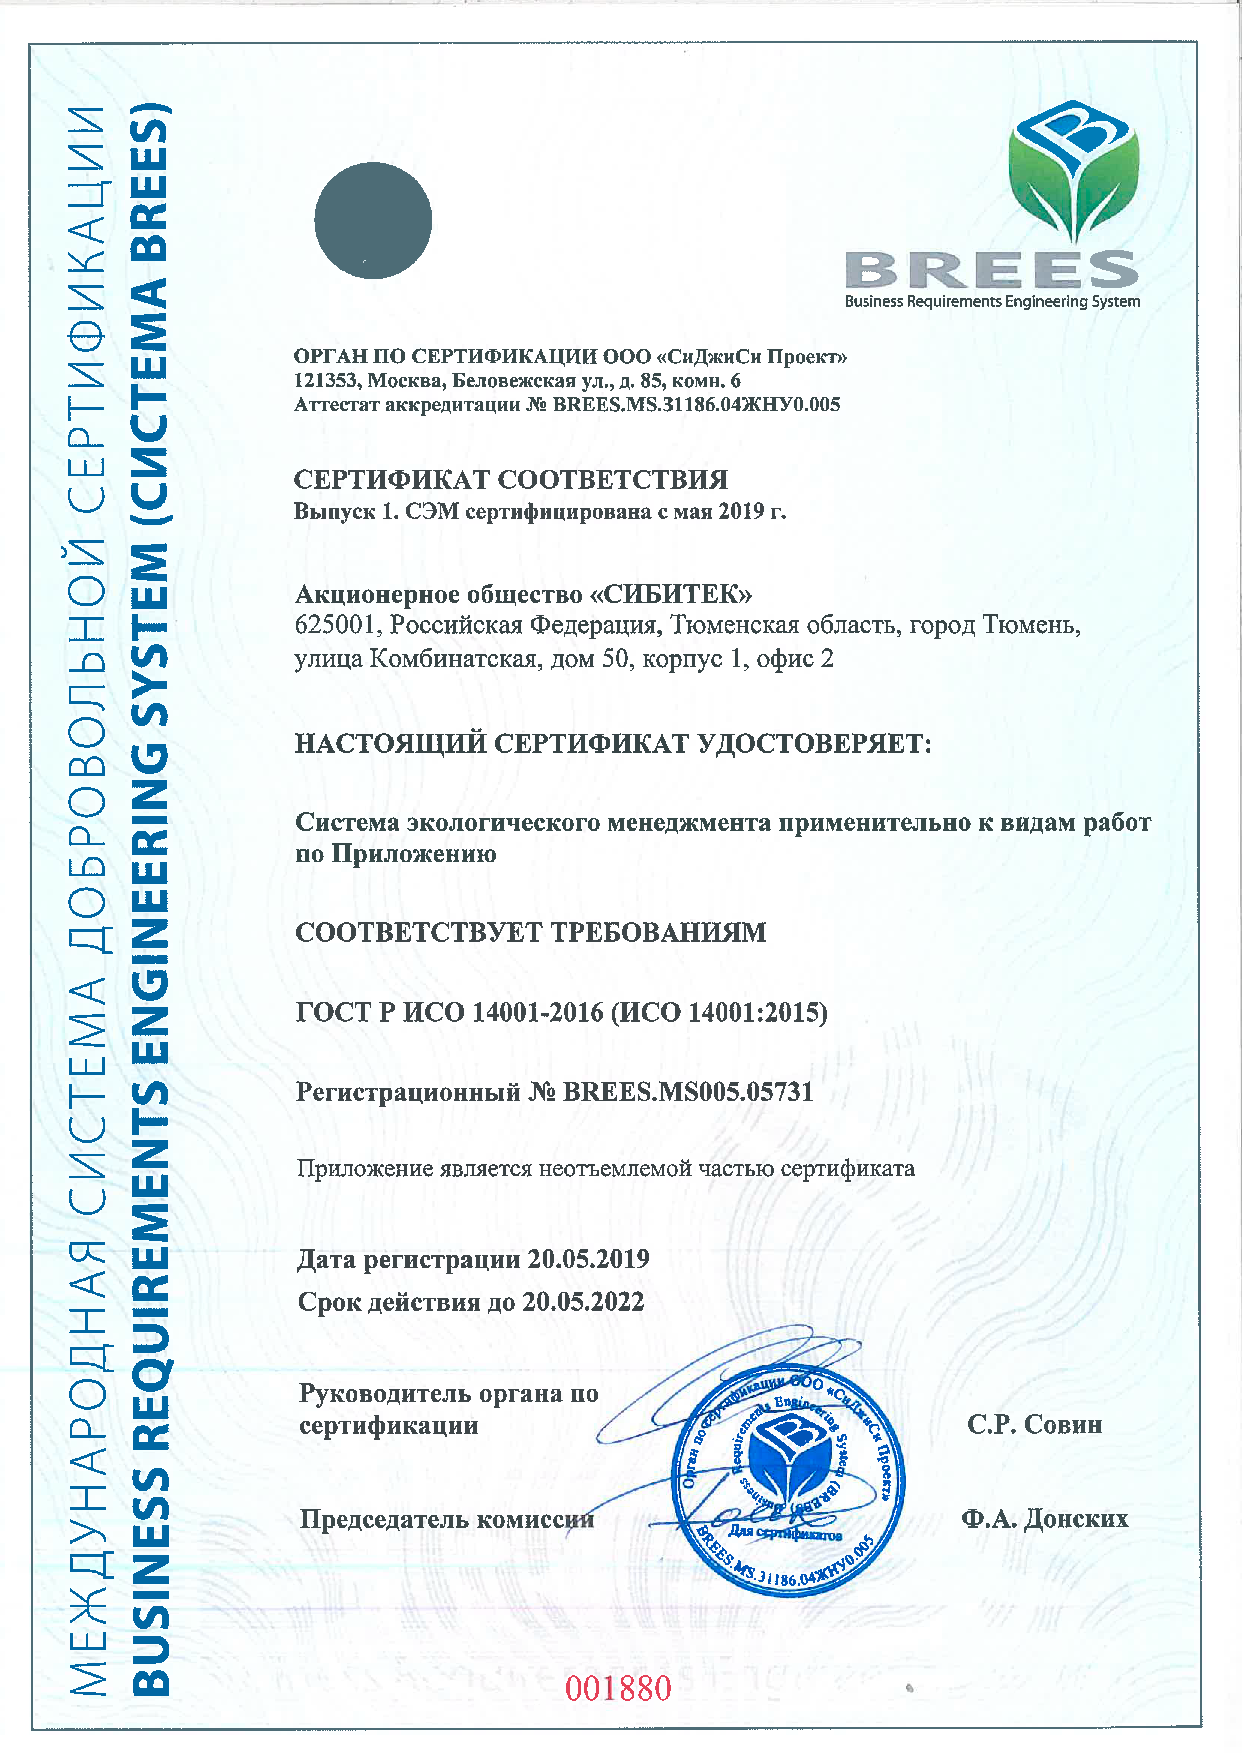 Сертификат соответствия №BREES.MS005.05731